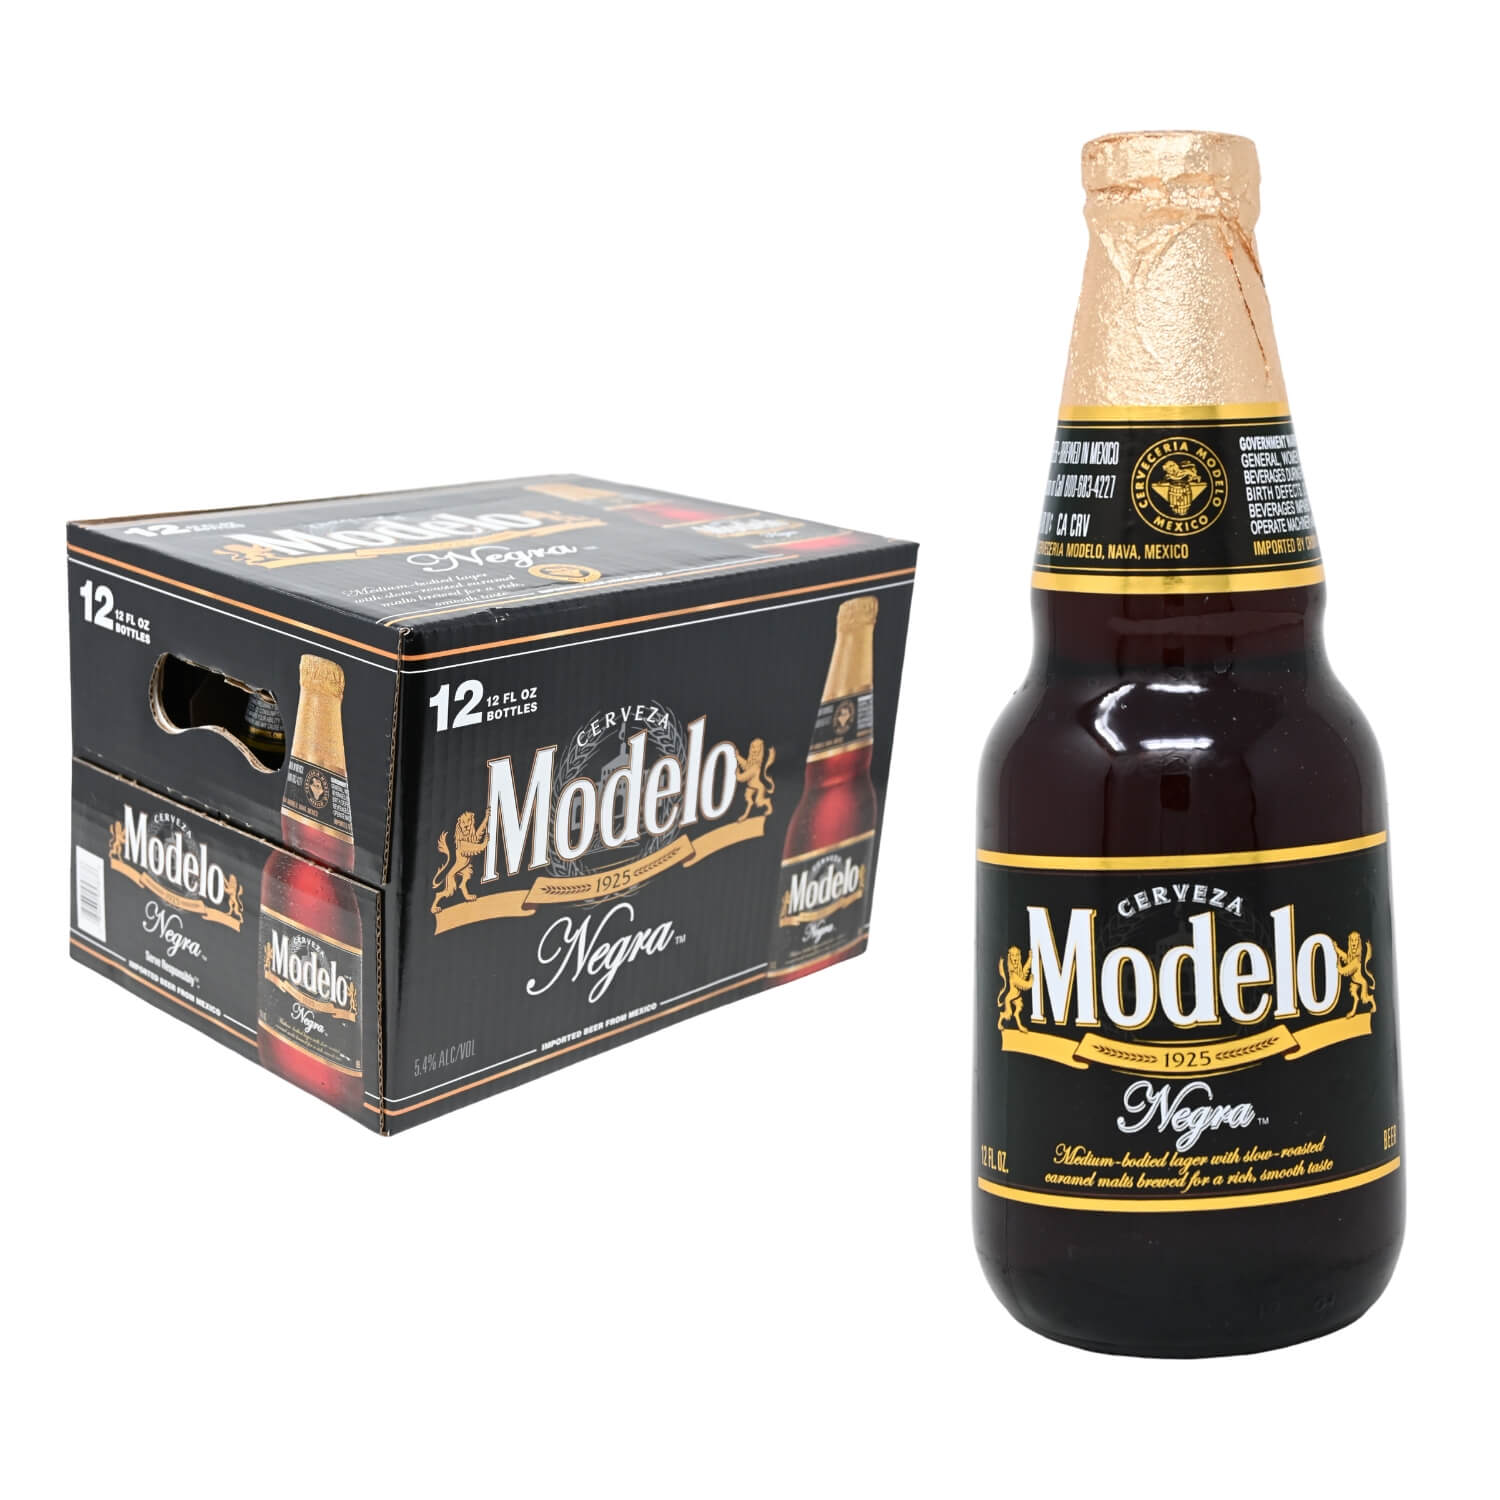 MODELO NEGRA | Stone's Beer & Beverage Market